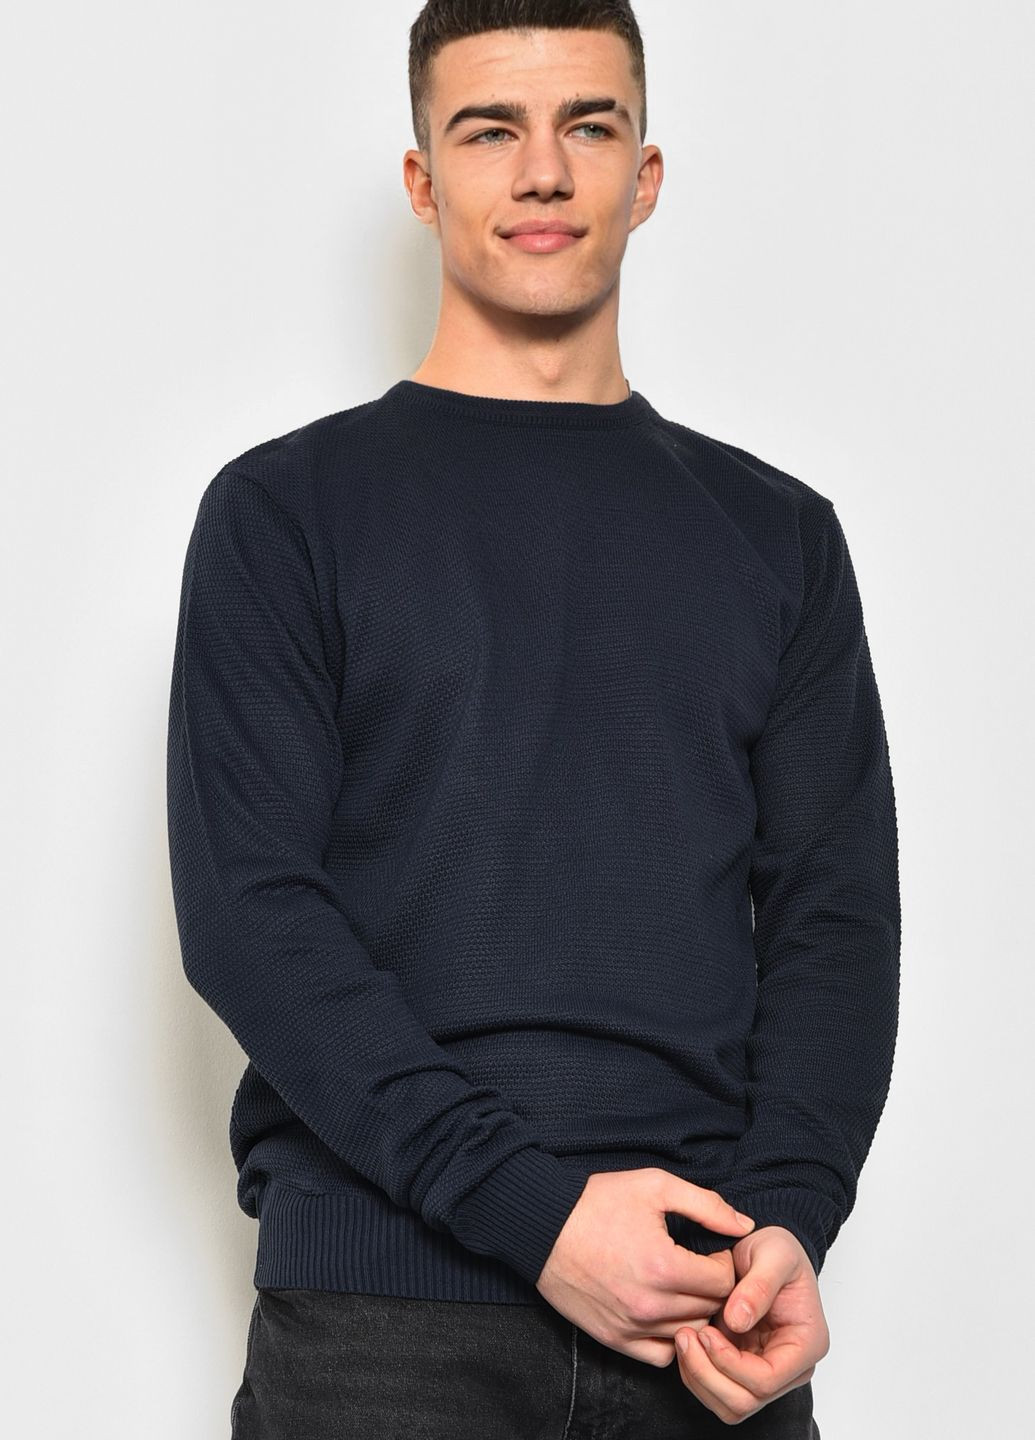 Синий демисезонный свитер мужской синего цвета пуловер Let's Shop